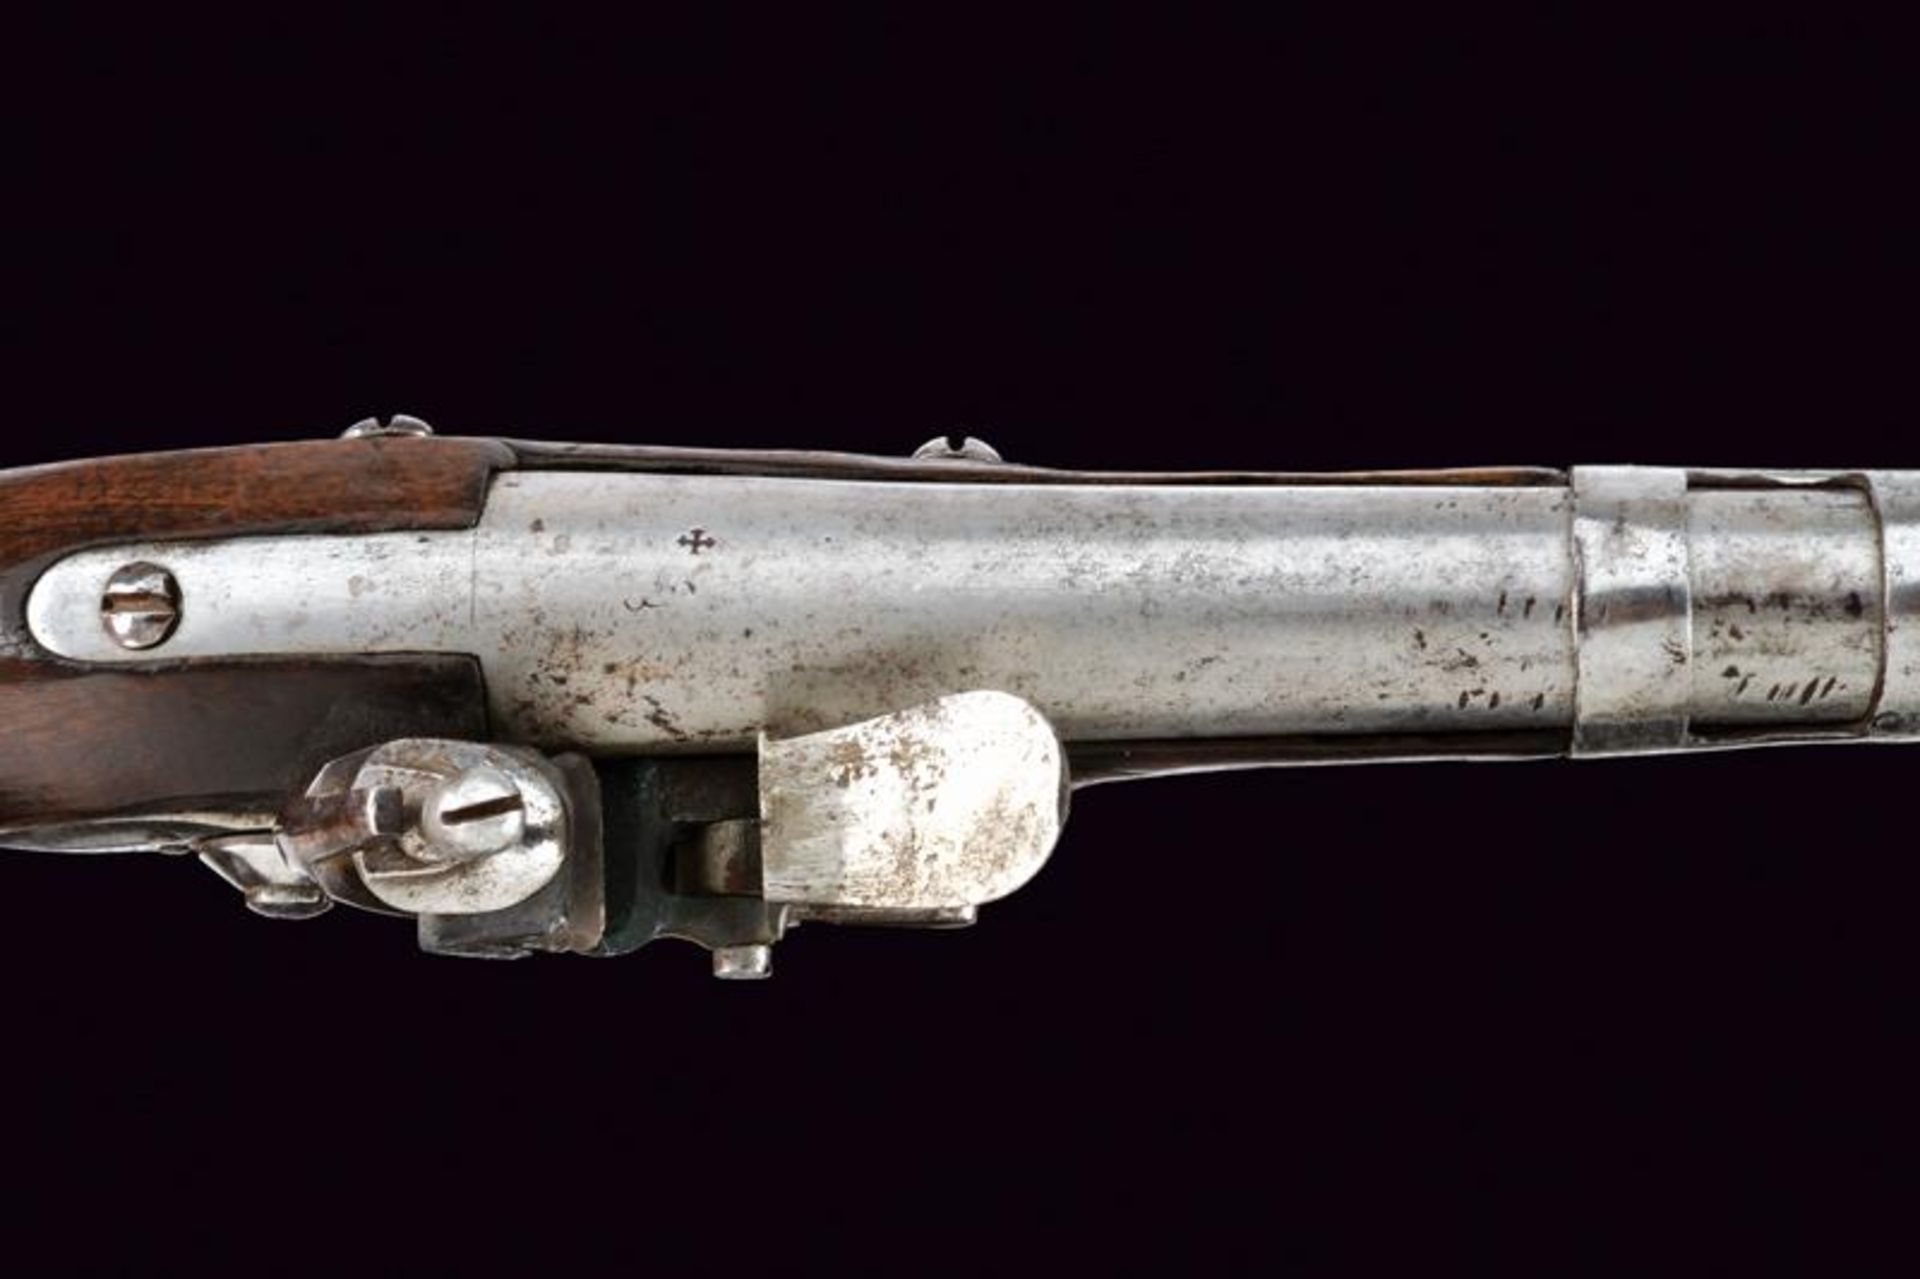 A gendarmerie flintlock pistol - Image 5 of 7